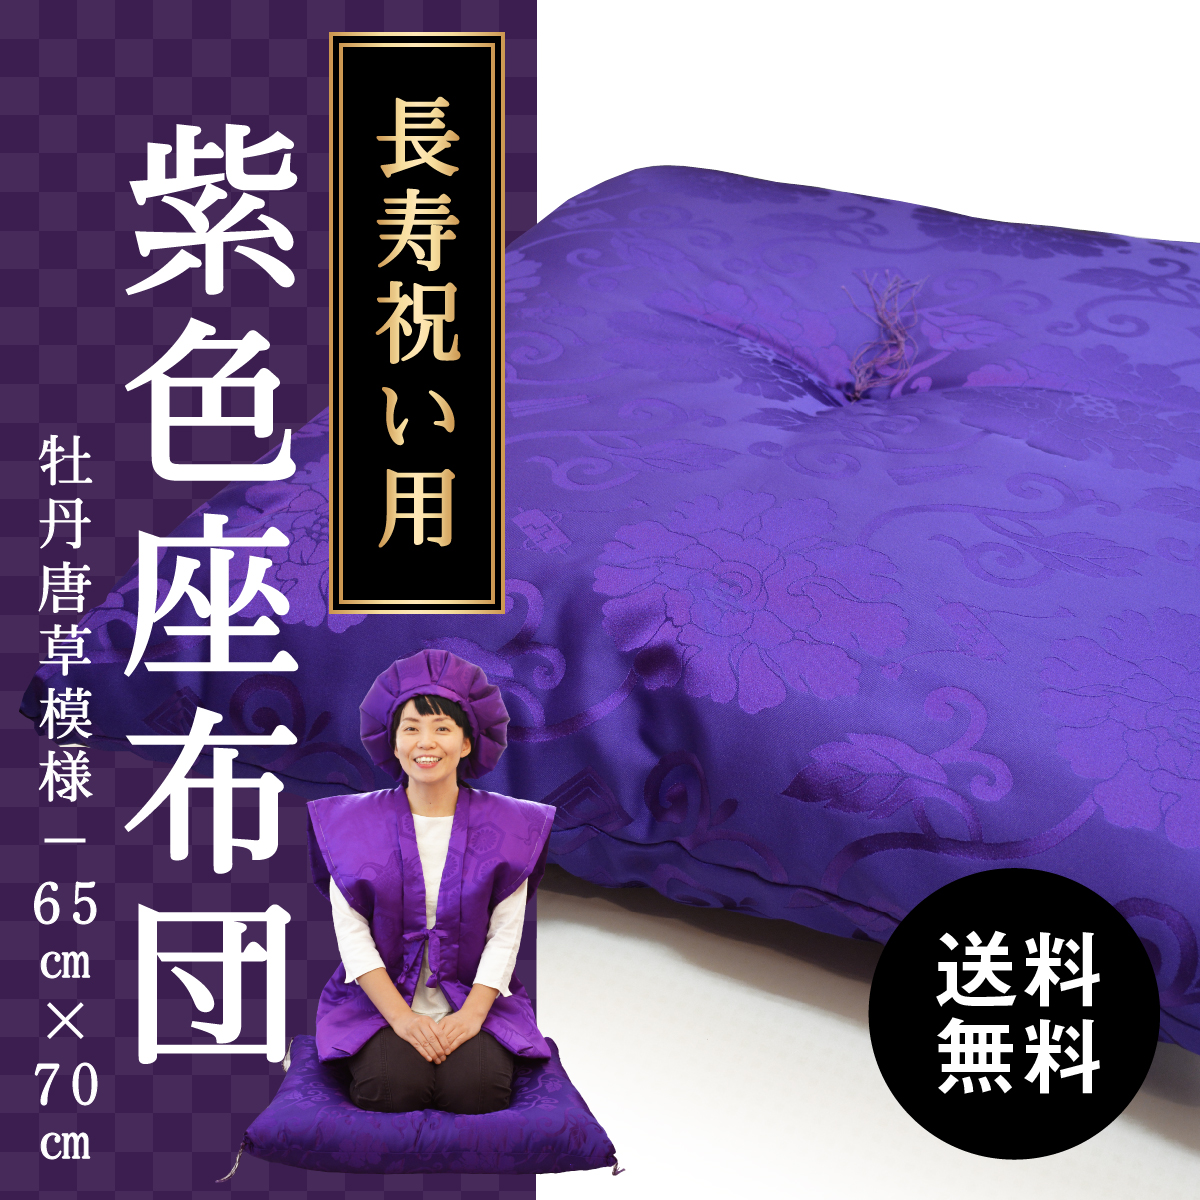 古希 喜寿 卒寿 プレゼント 紫色の座布団